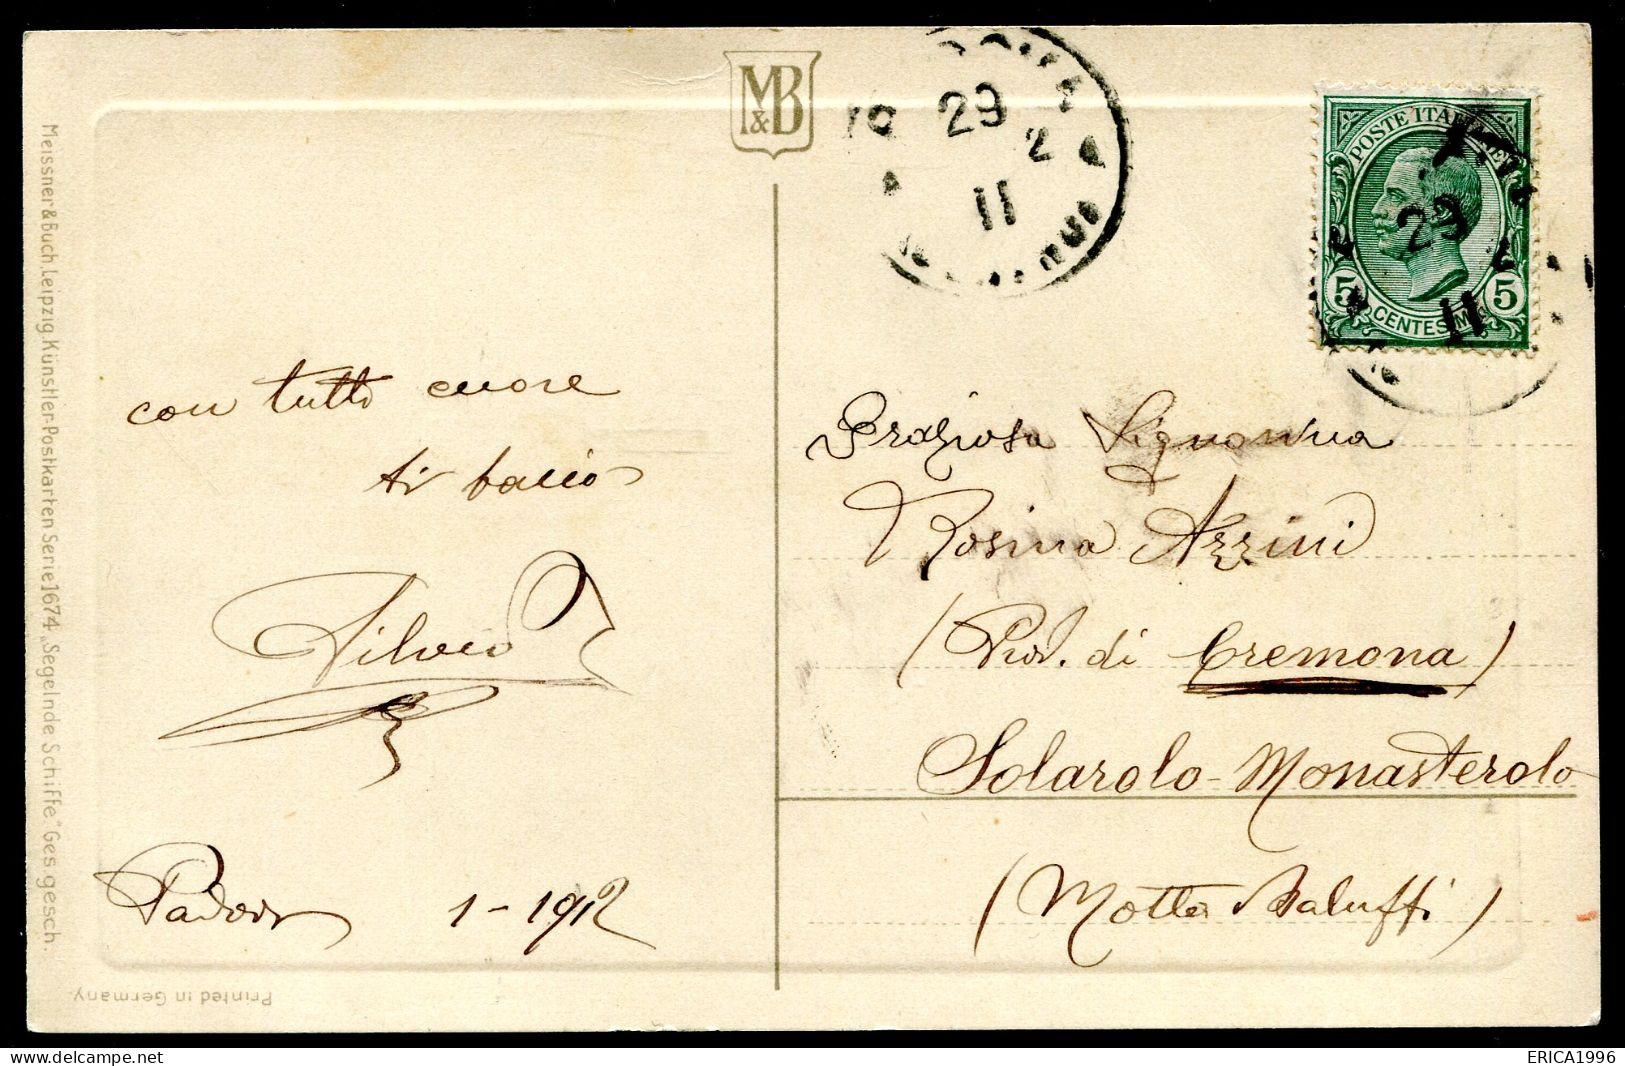 cV4002 NAVIGAZIONE BARCHE 4 cartoline di produzione tedesca, ill. H. Grande-T, FP, viaggiate 1912 da Padova a Solarolo M